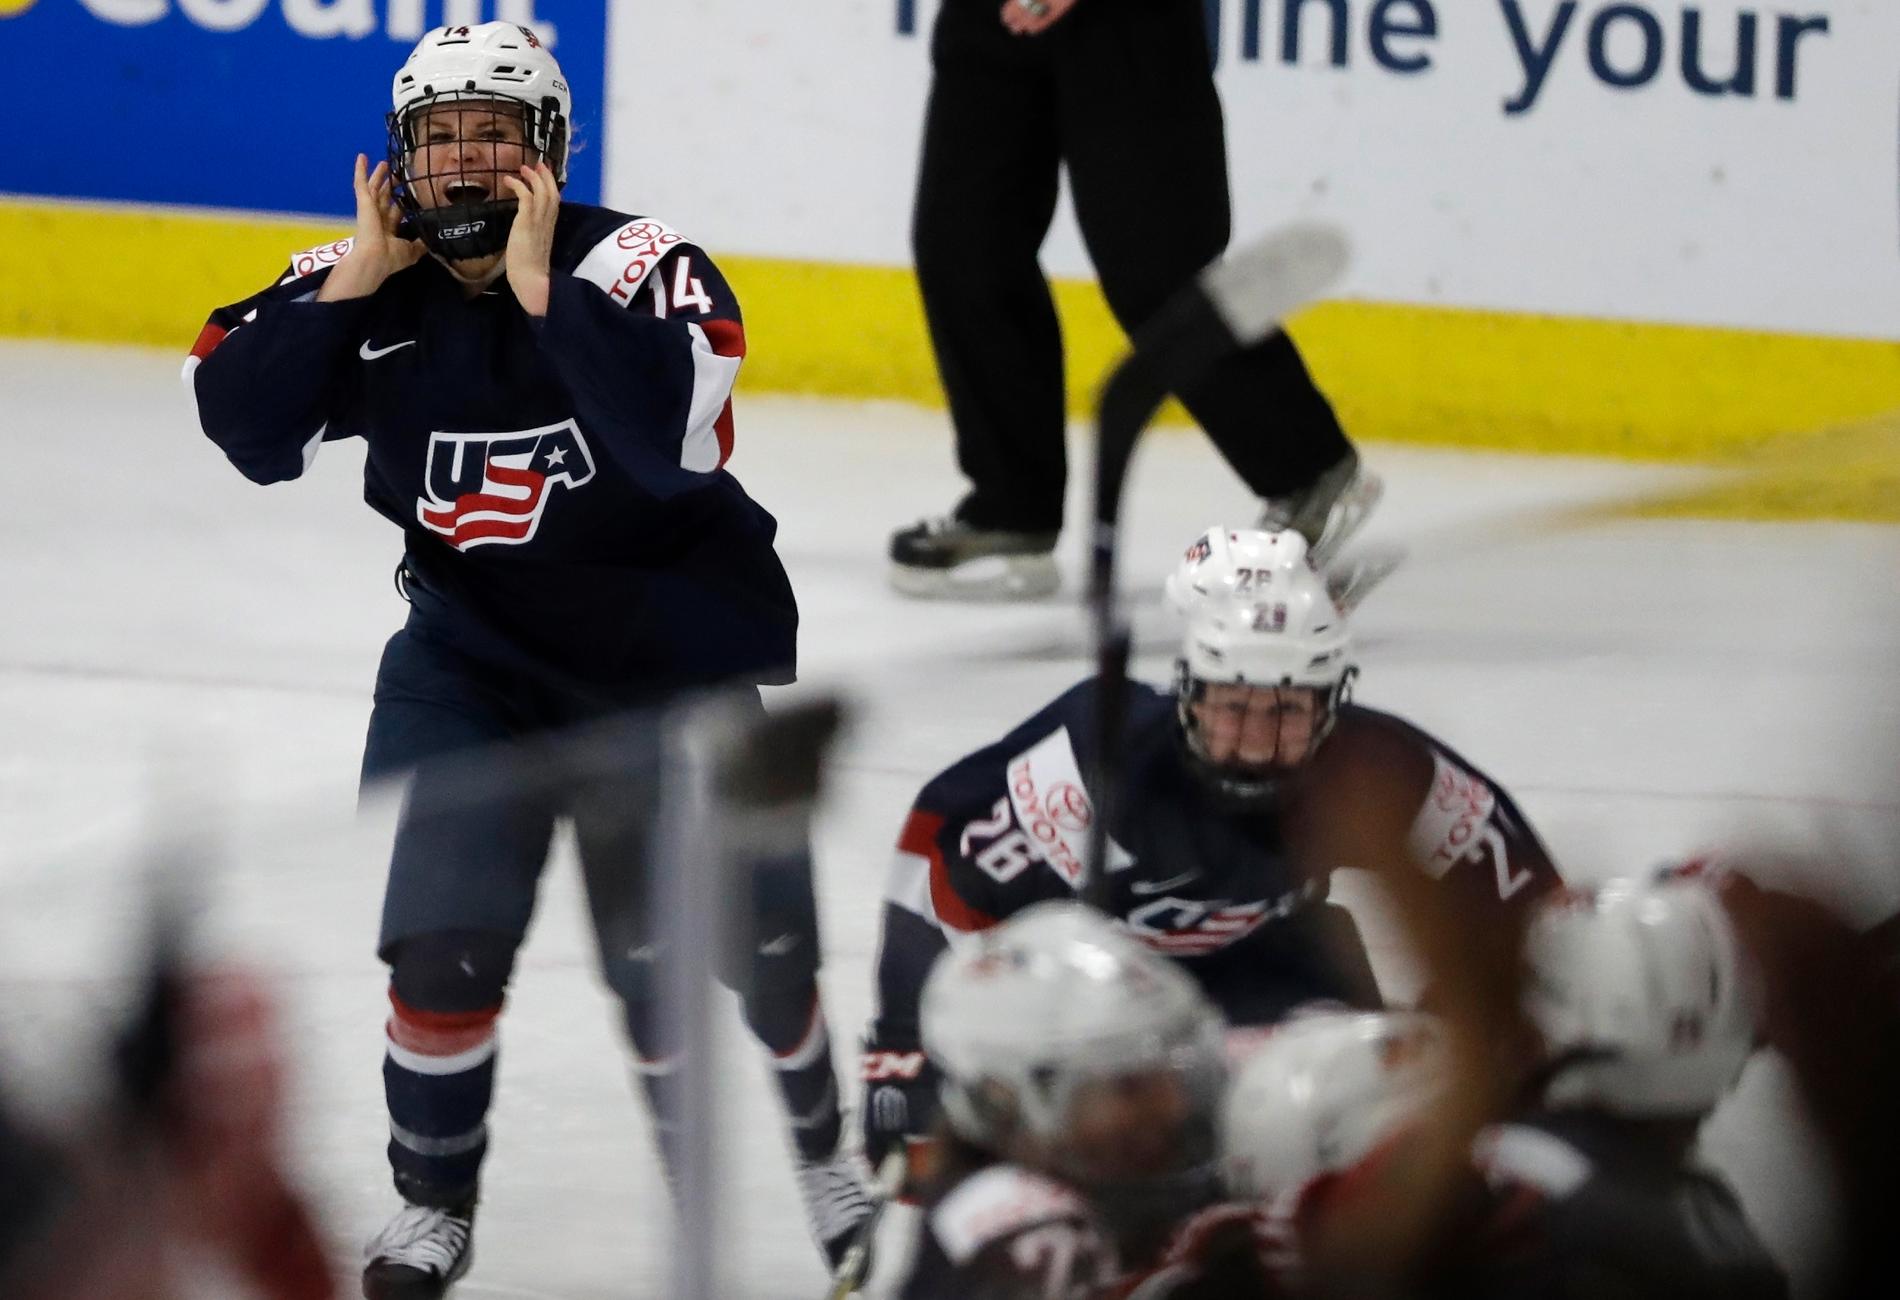 Brianna Decker och Hilary Knight jublar efter att USA gjort det avgörande målet mot Kanada i VM-finalen i ishockey.